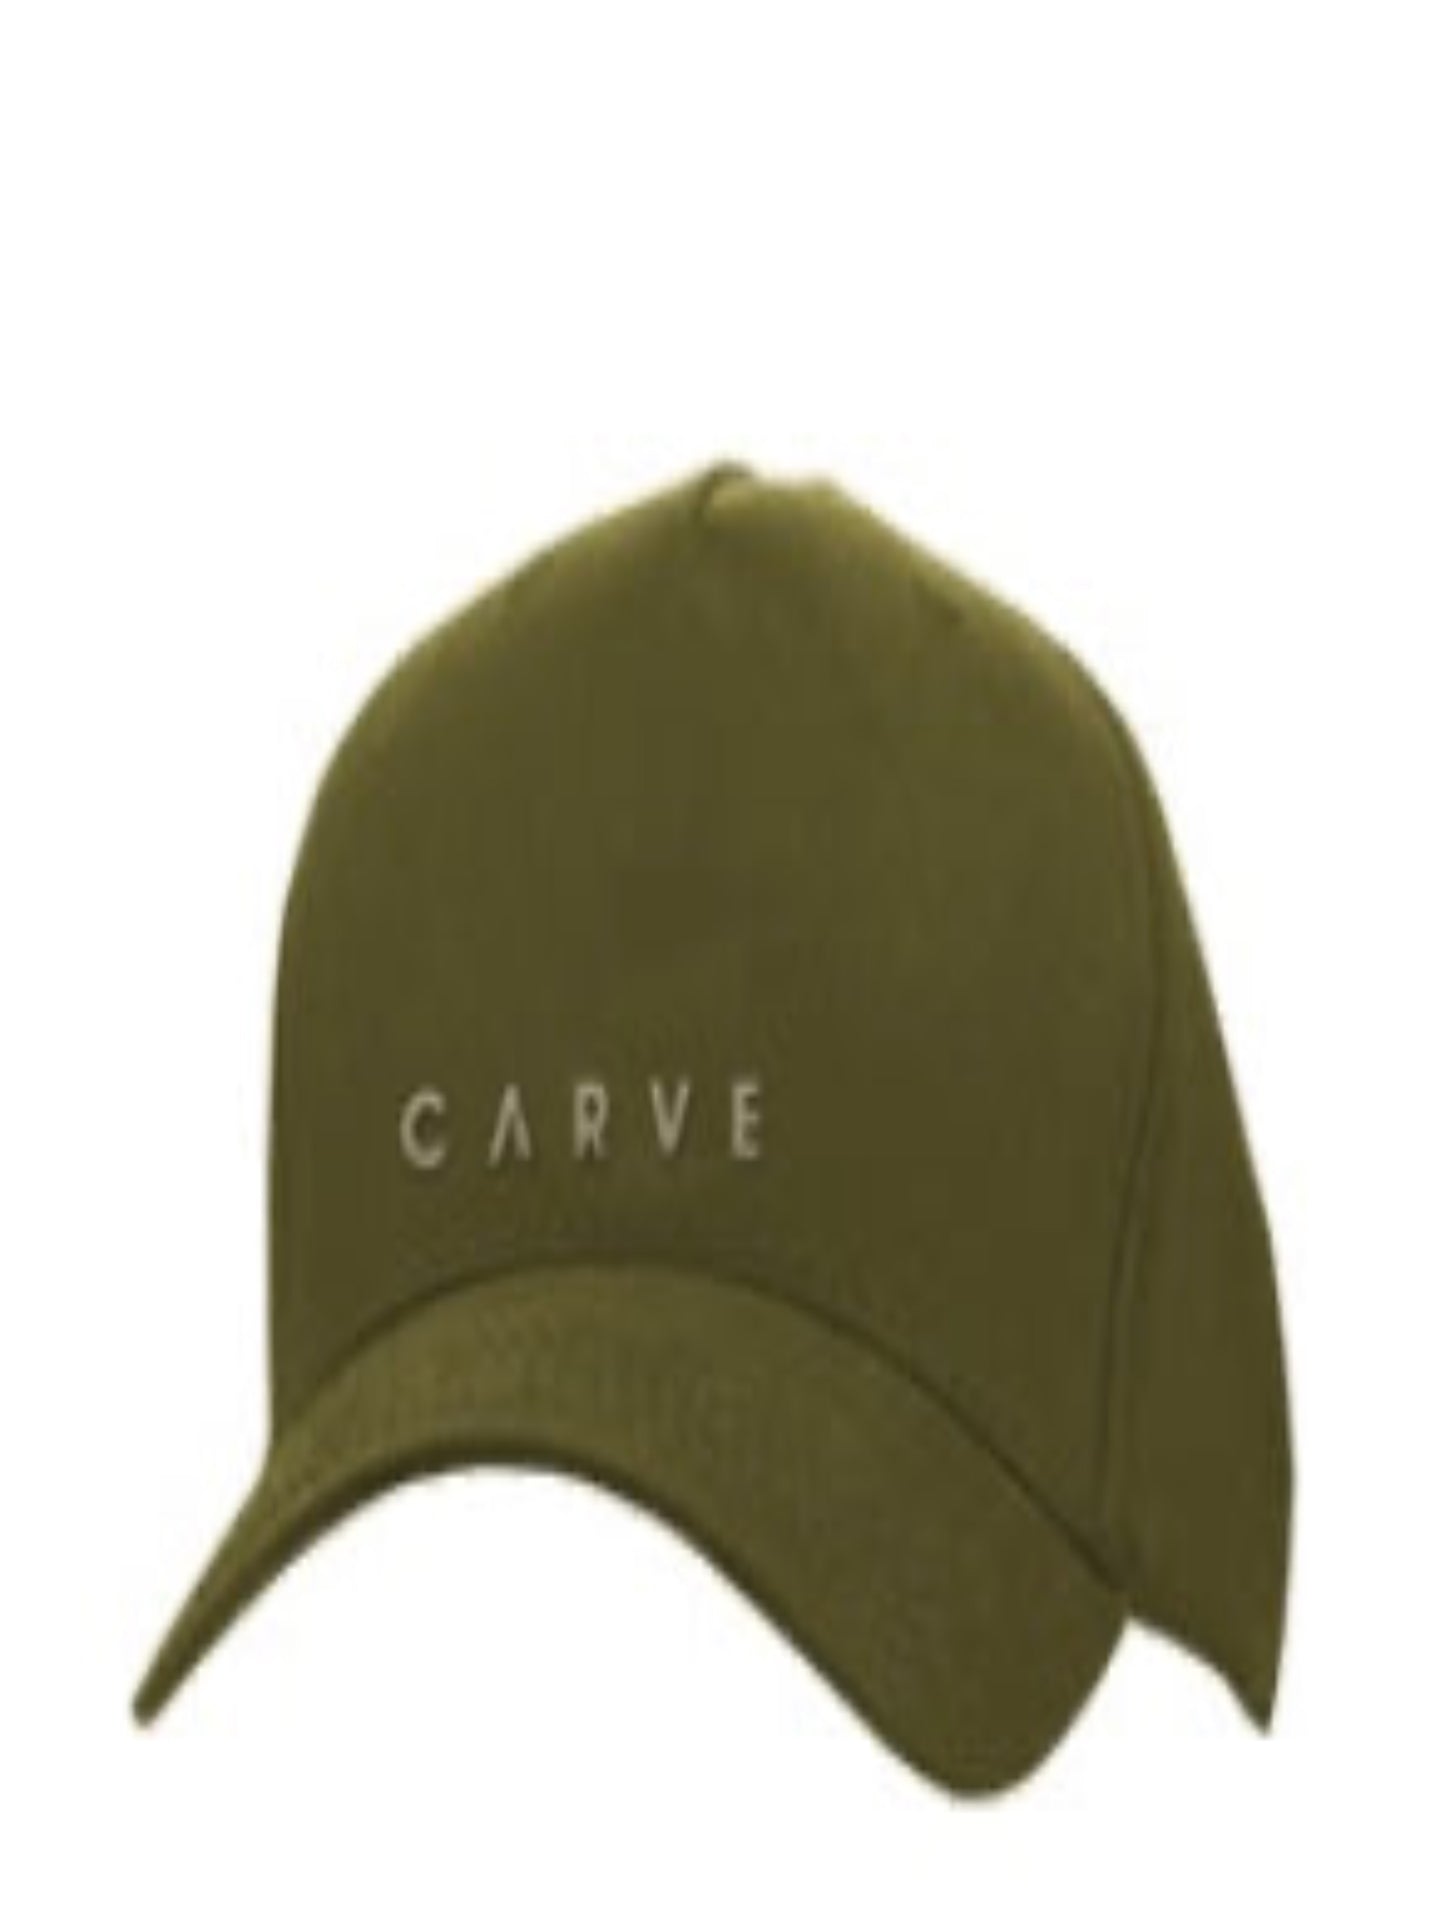 Carve Home Run Unisex Curved Peak Cap- Olive